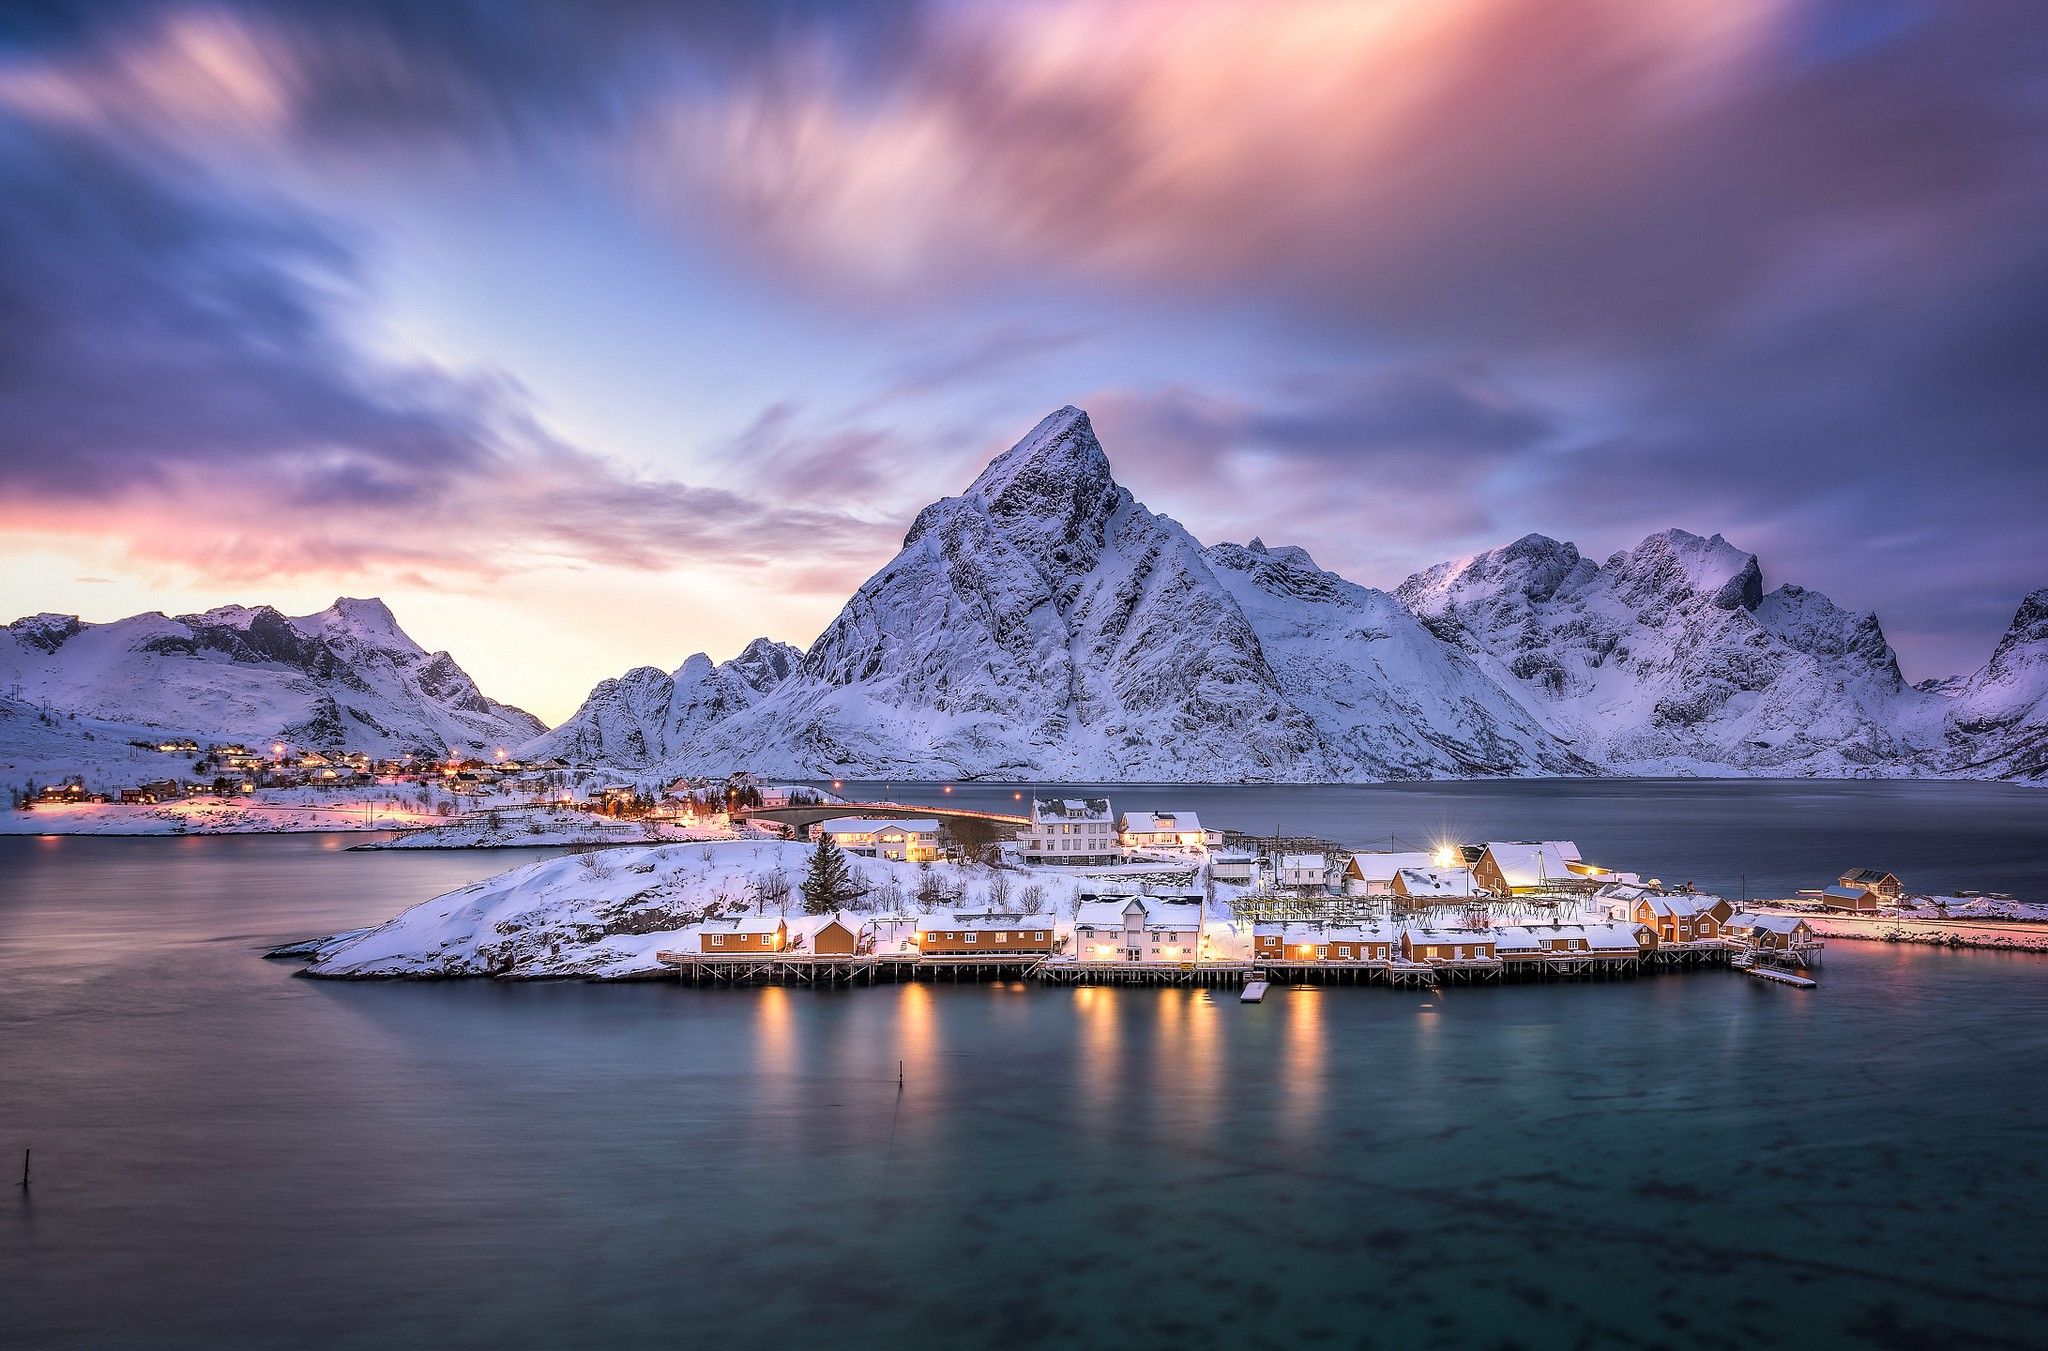 عکس با کیفیت hd برای تصویر زمینه کوهستانی نروژ در فصل زمستان